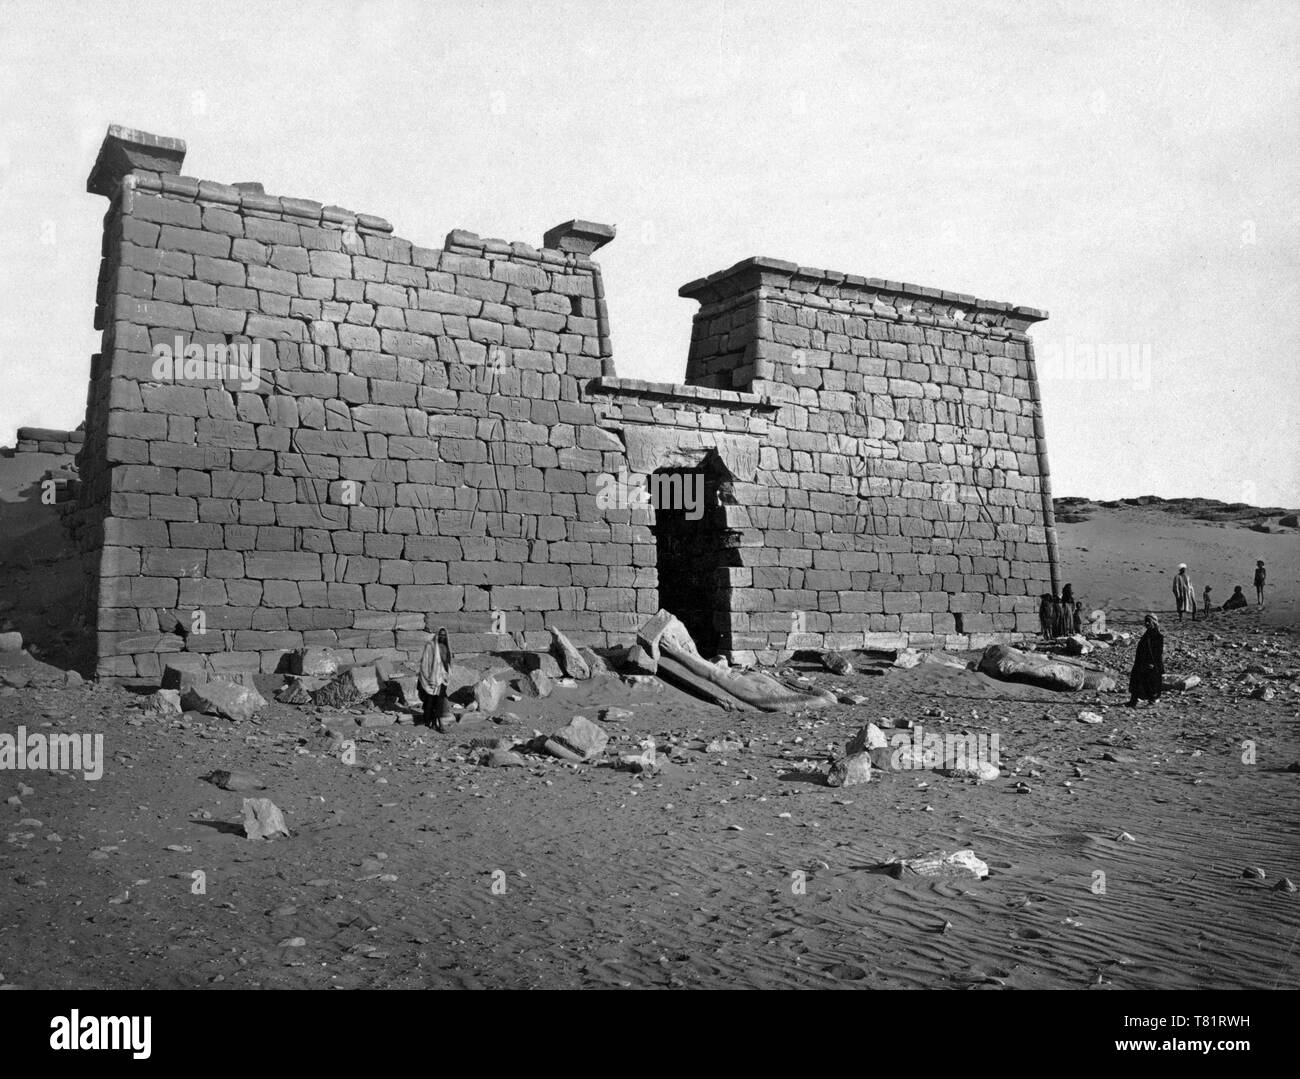 Nubia, Wadi es-Sebua, 1850s Stock Photo